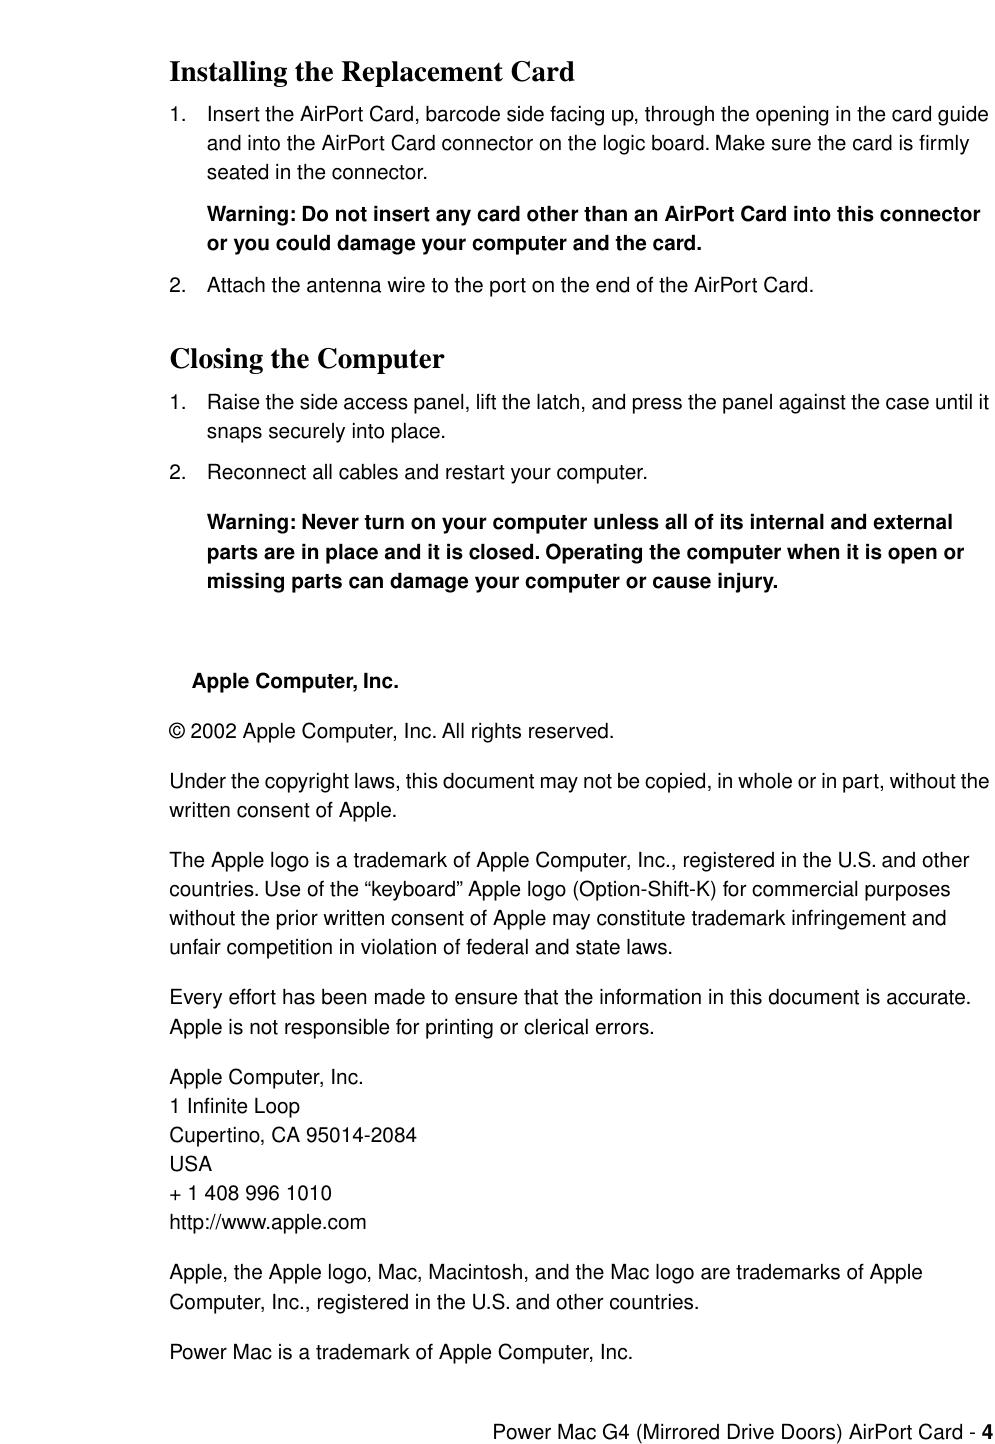 Apple power mac g4 manual